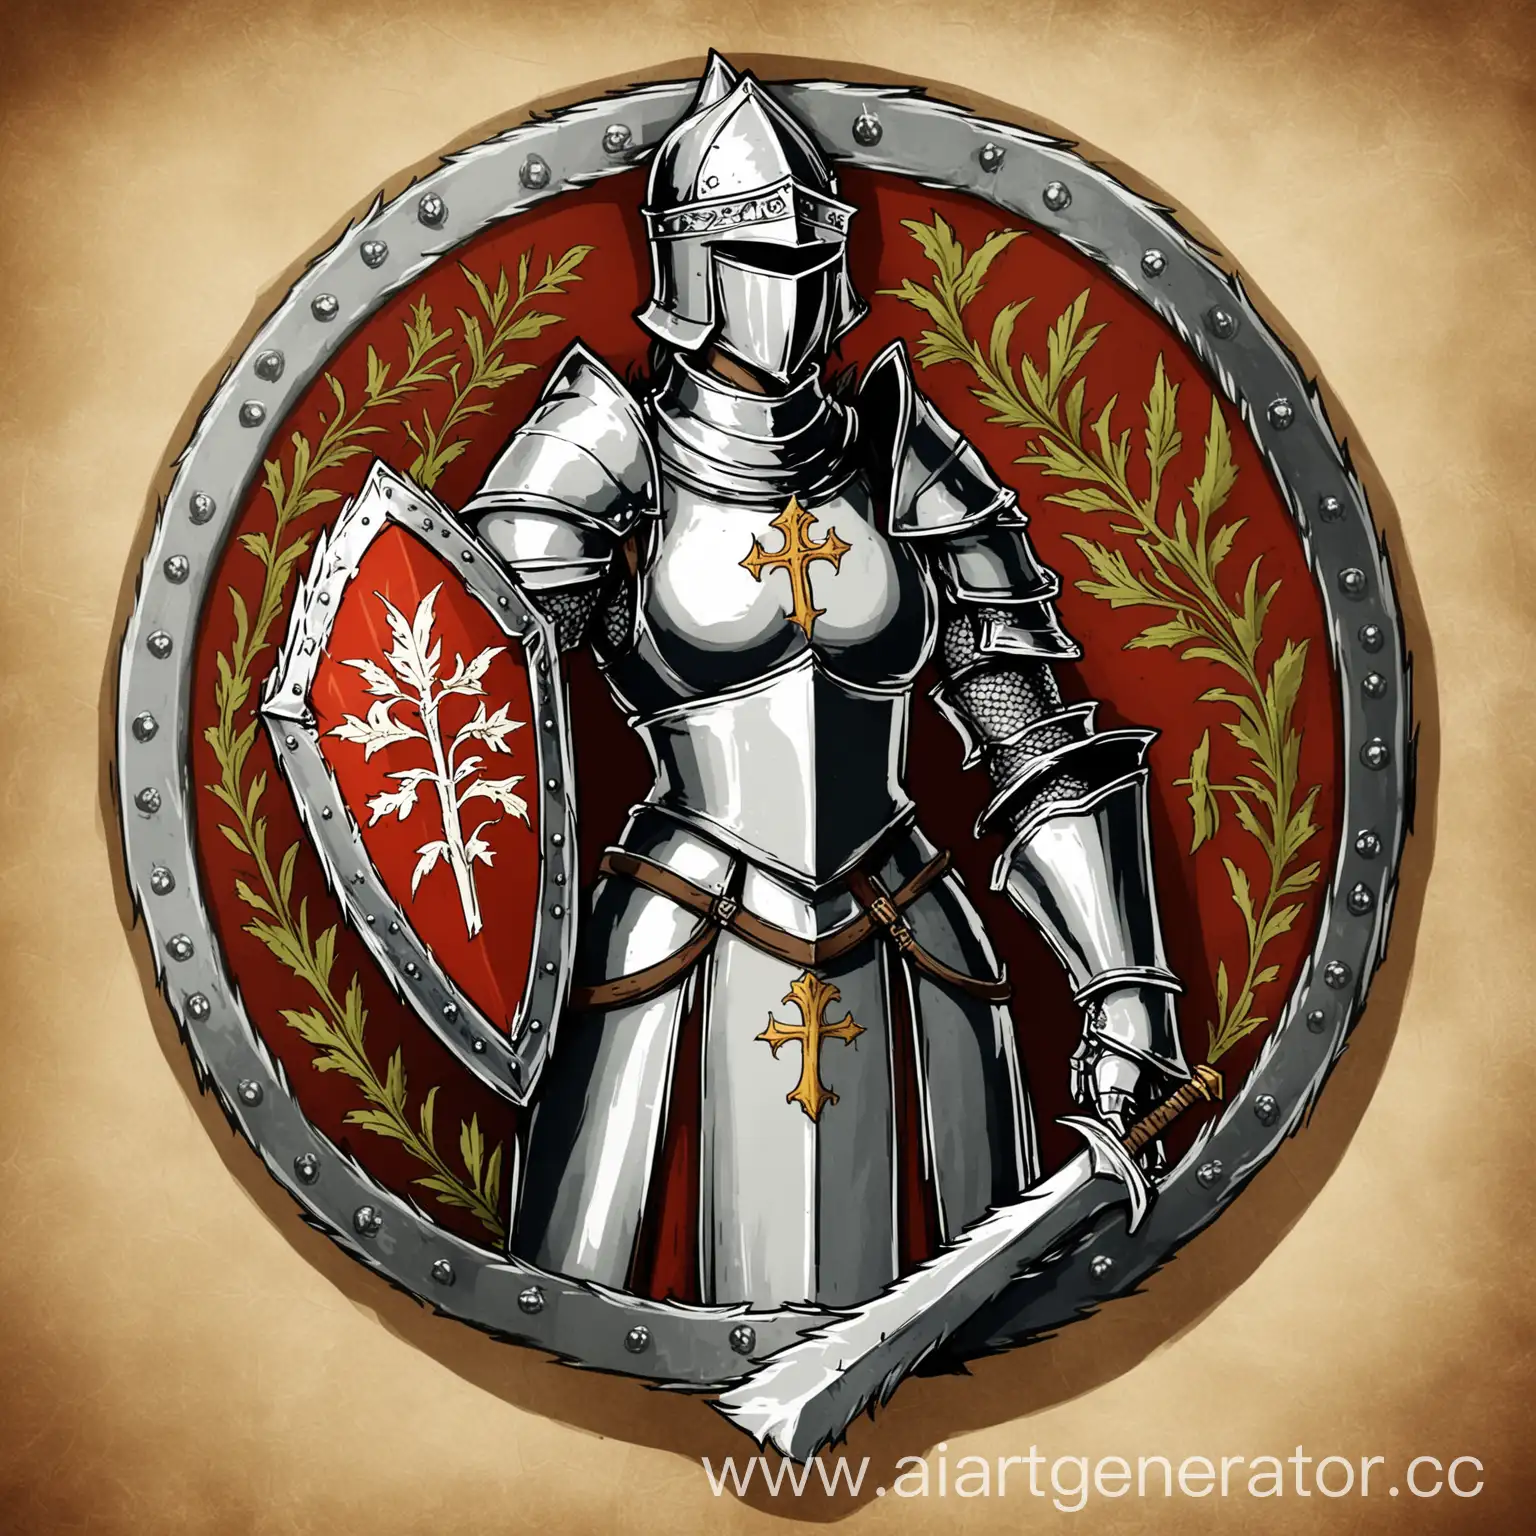 герб простой, символ, средневековый, религиозный, фэнтези, рыцарь,дракон, жрица церви держит щит 

